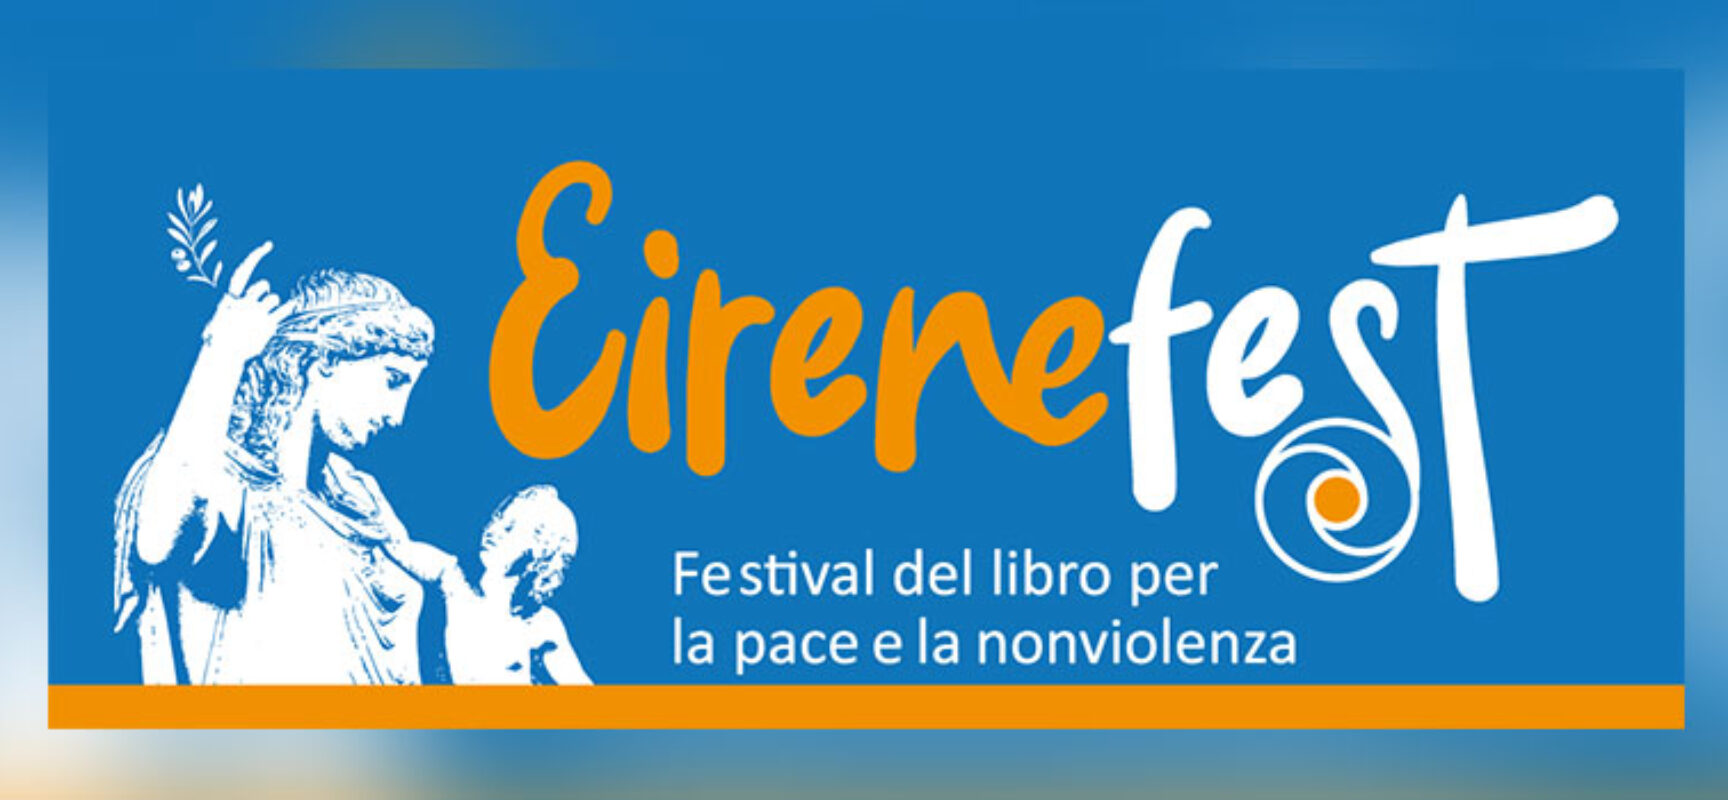 Il Castello di Bisceglie ospiterà l’Eirenefest, Festival del libro per la pace